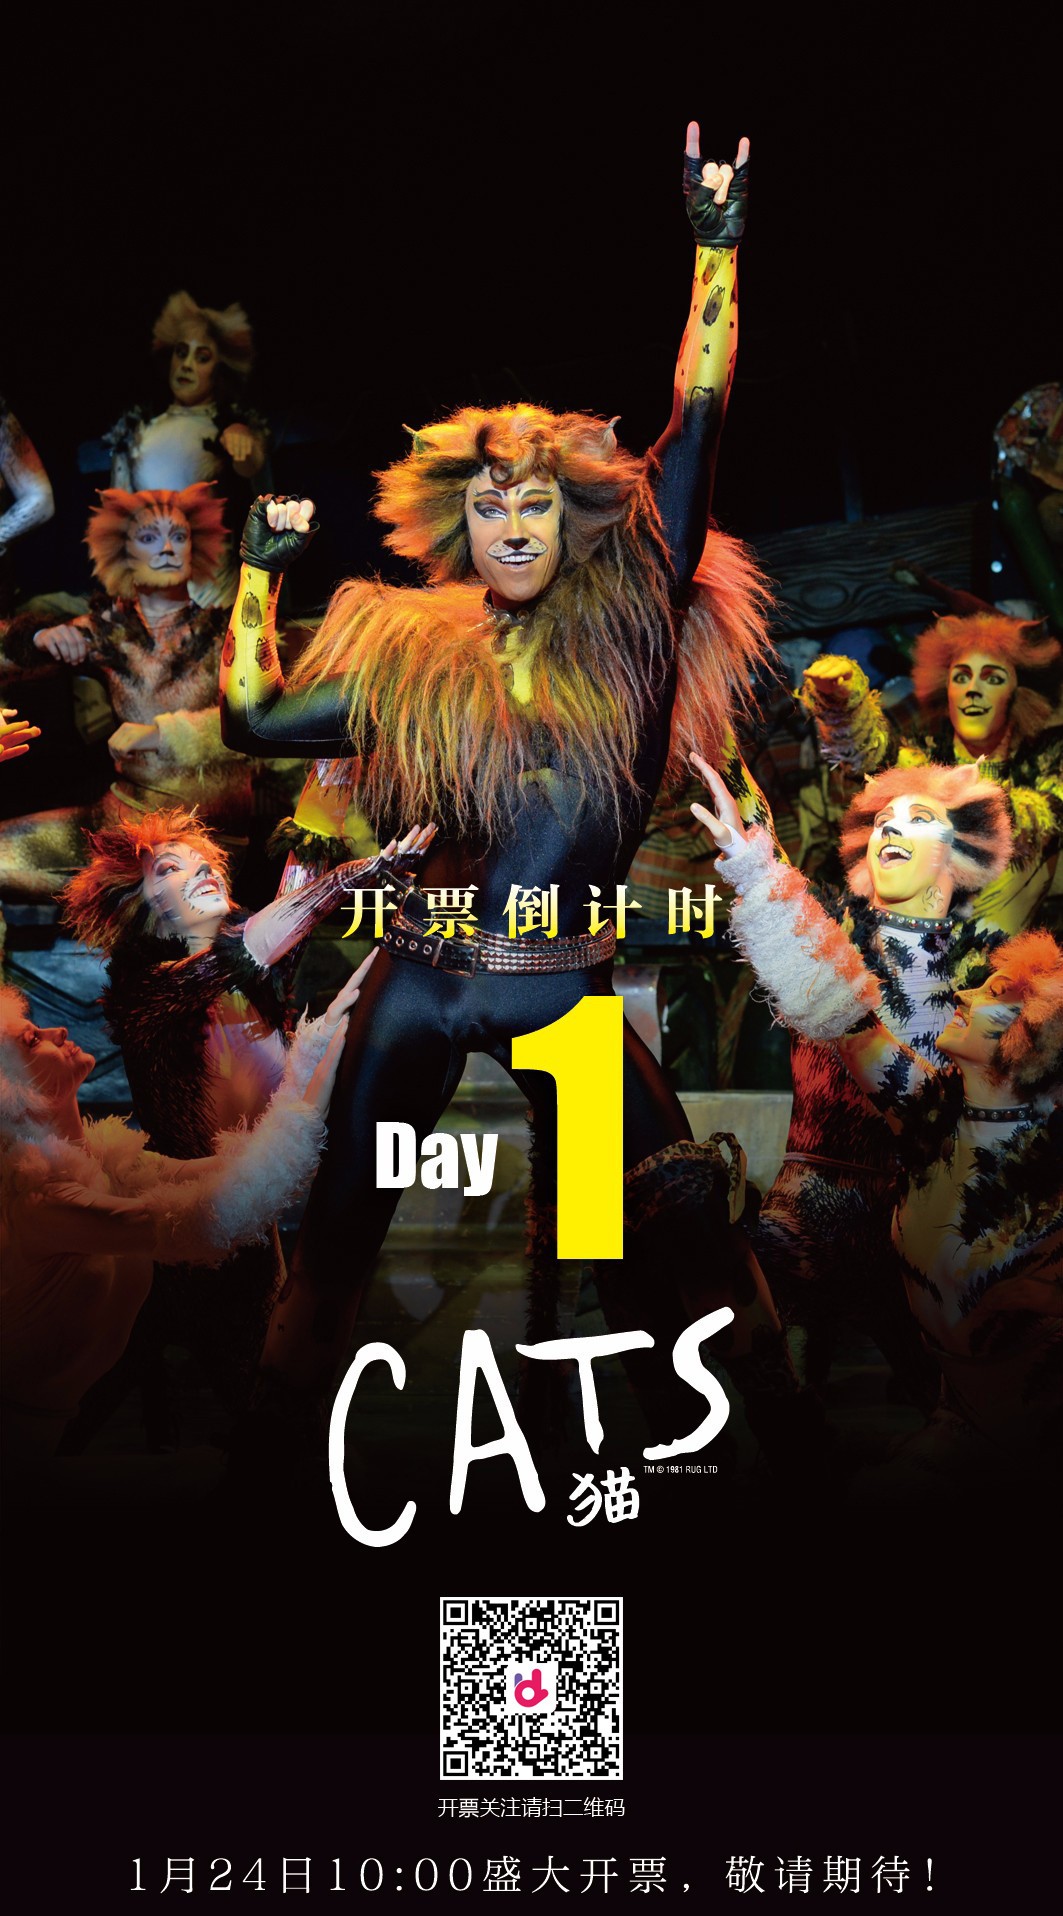 【明天 10:00火热开售】世界经典原版音乐剧《猫》cats,今生必看引爆